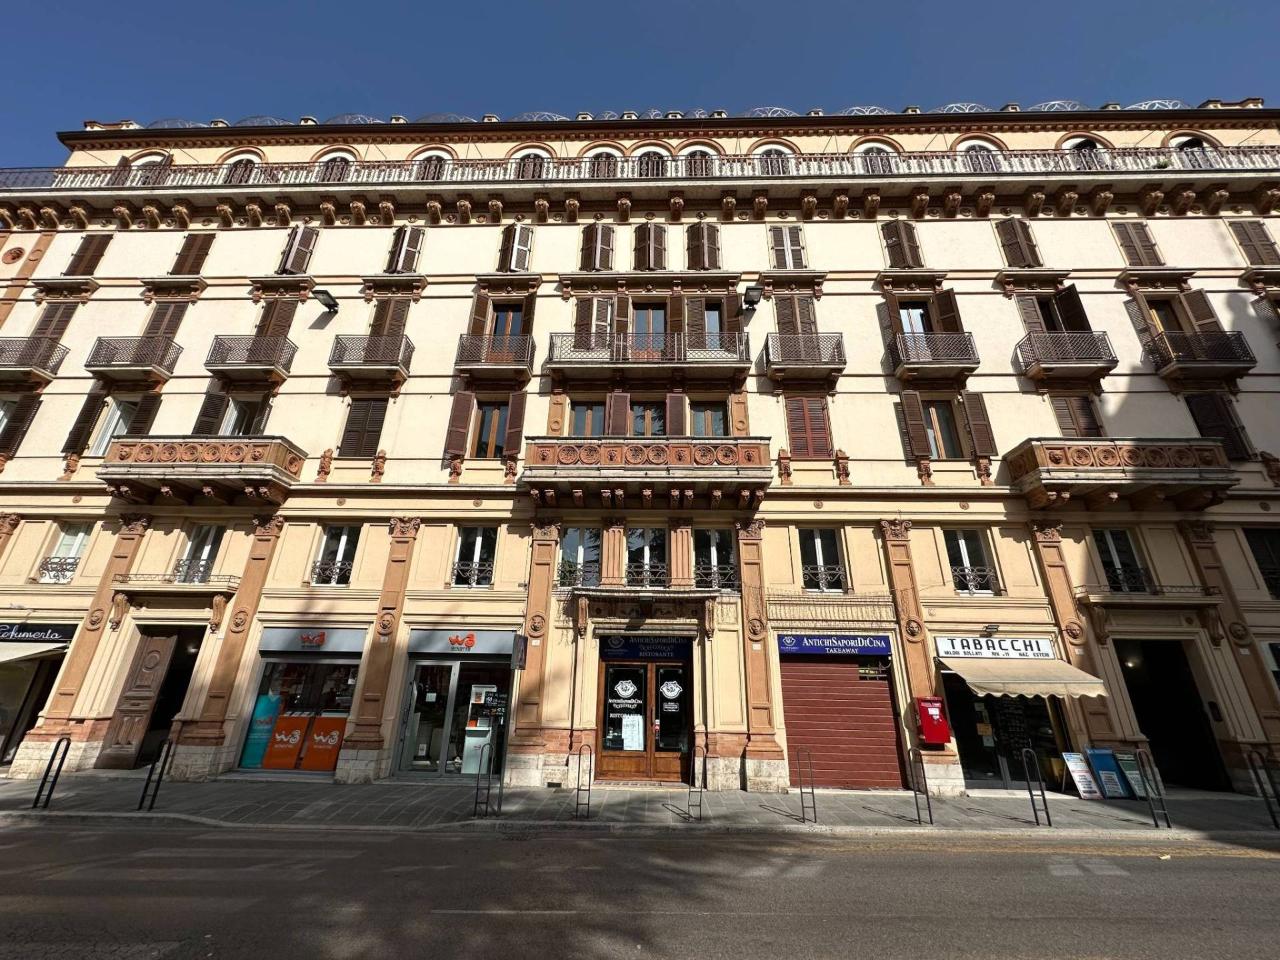 Ufficio condiviso in affitto a Perugia